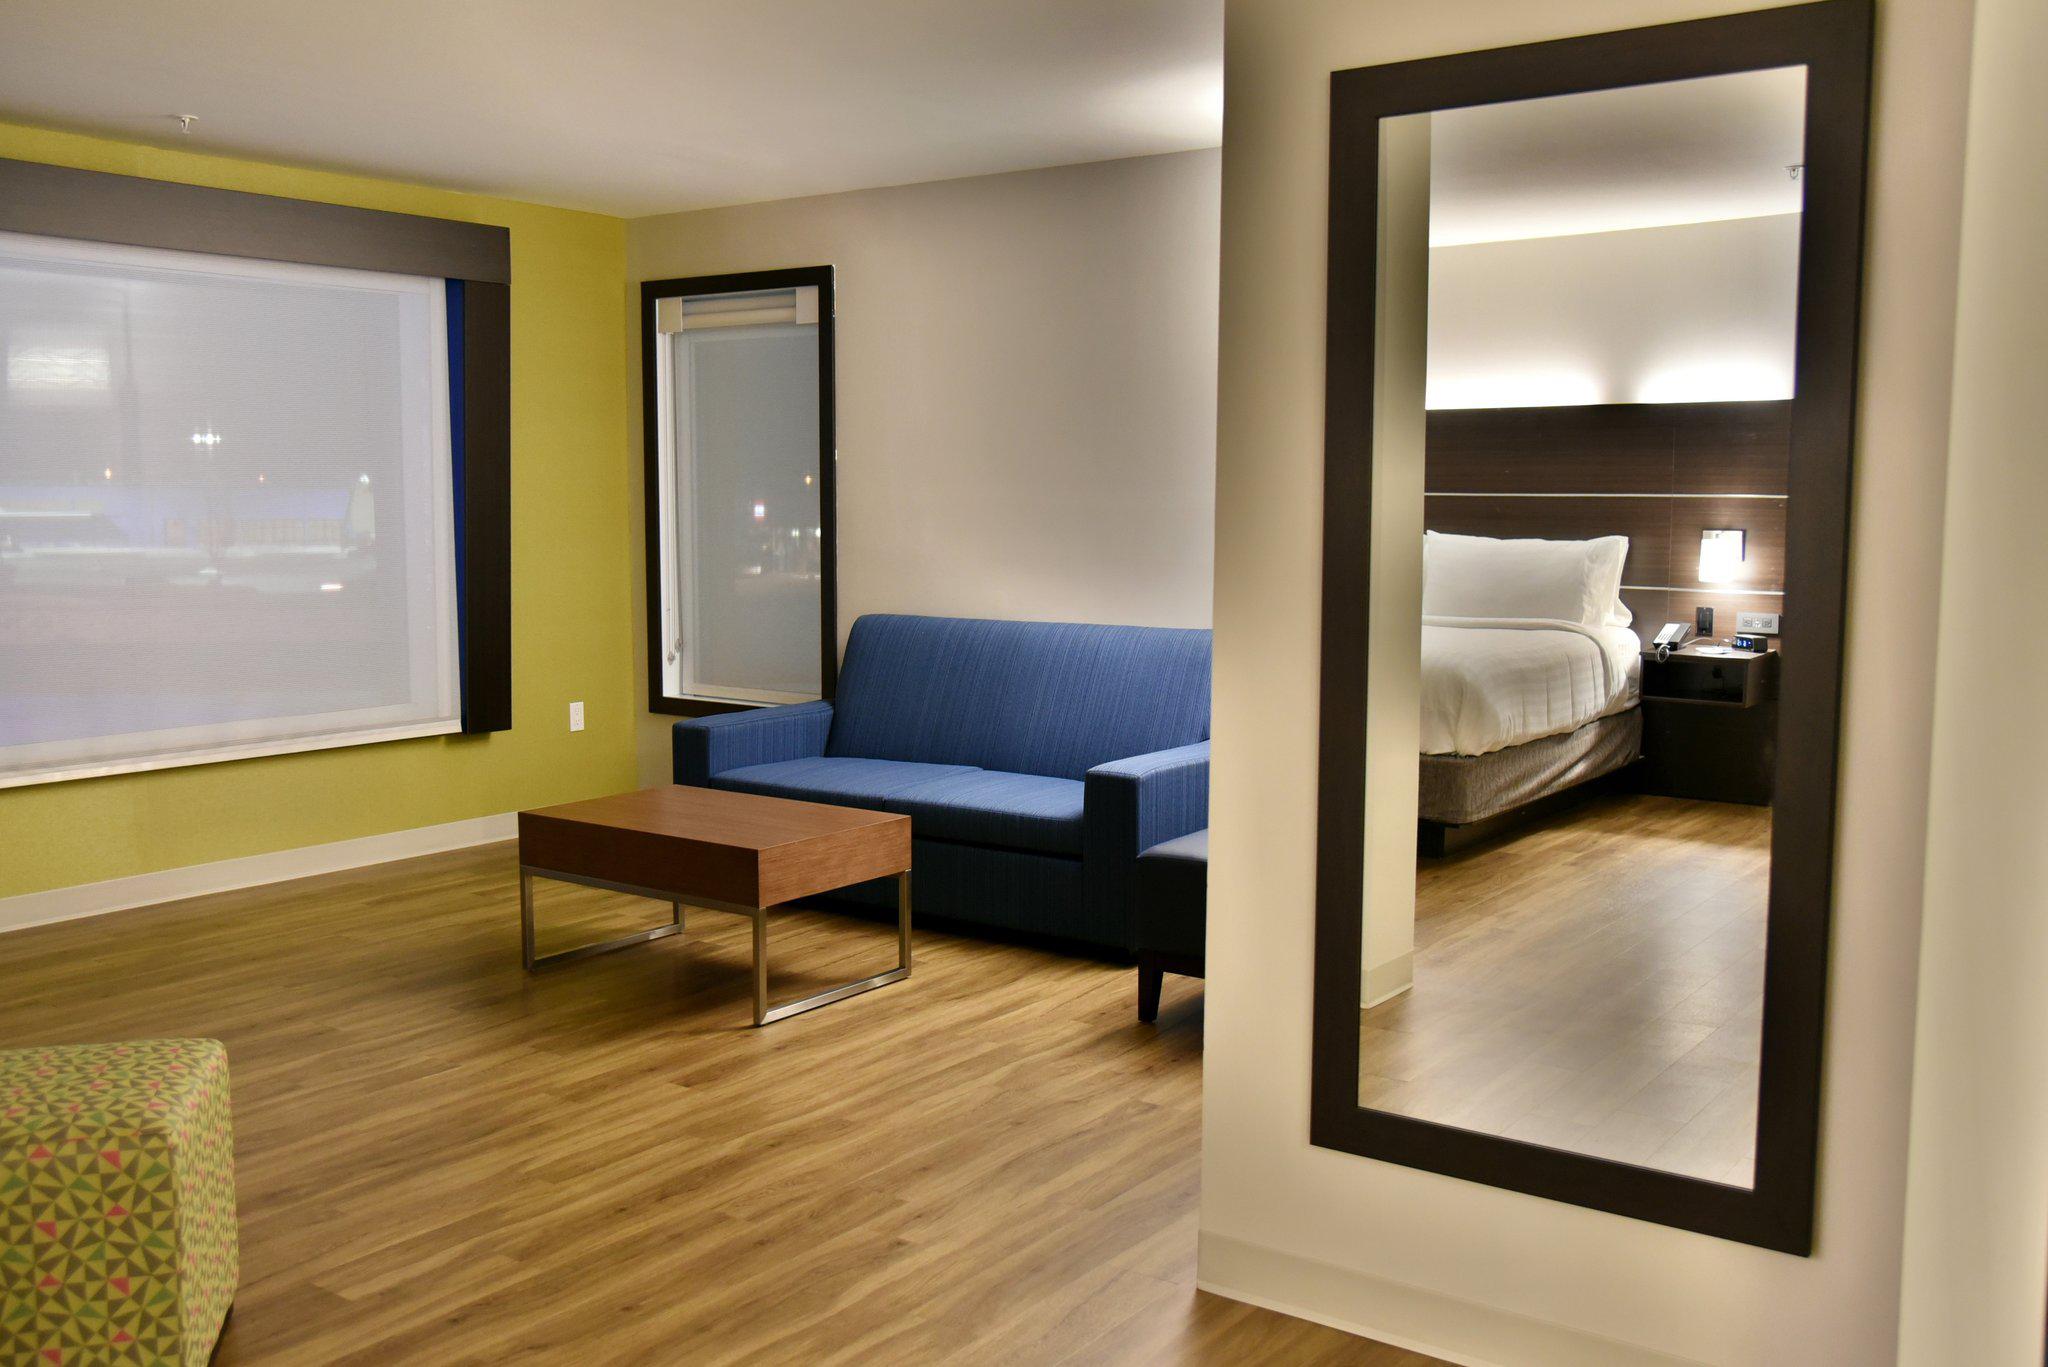 Foto de Holiday Inn Express & Suites Gatineau - Ottawa, an IHG Hotel Gatineau